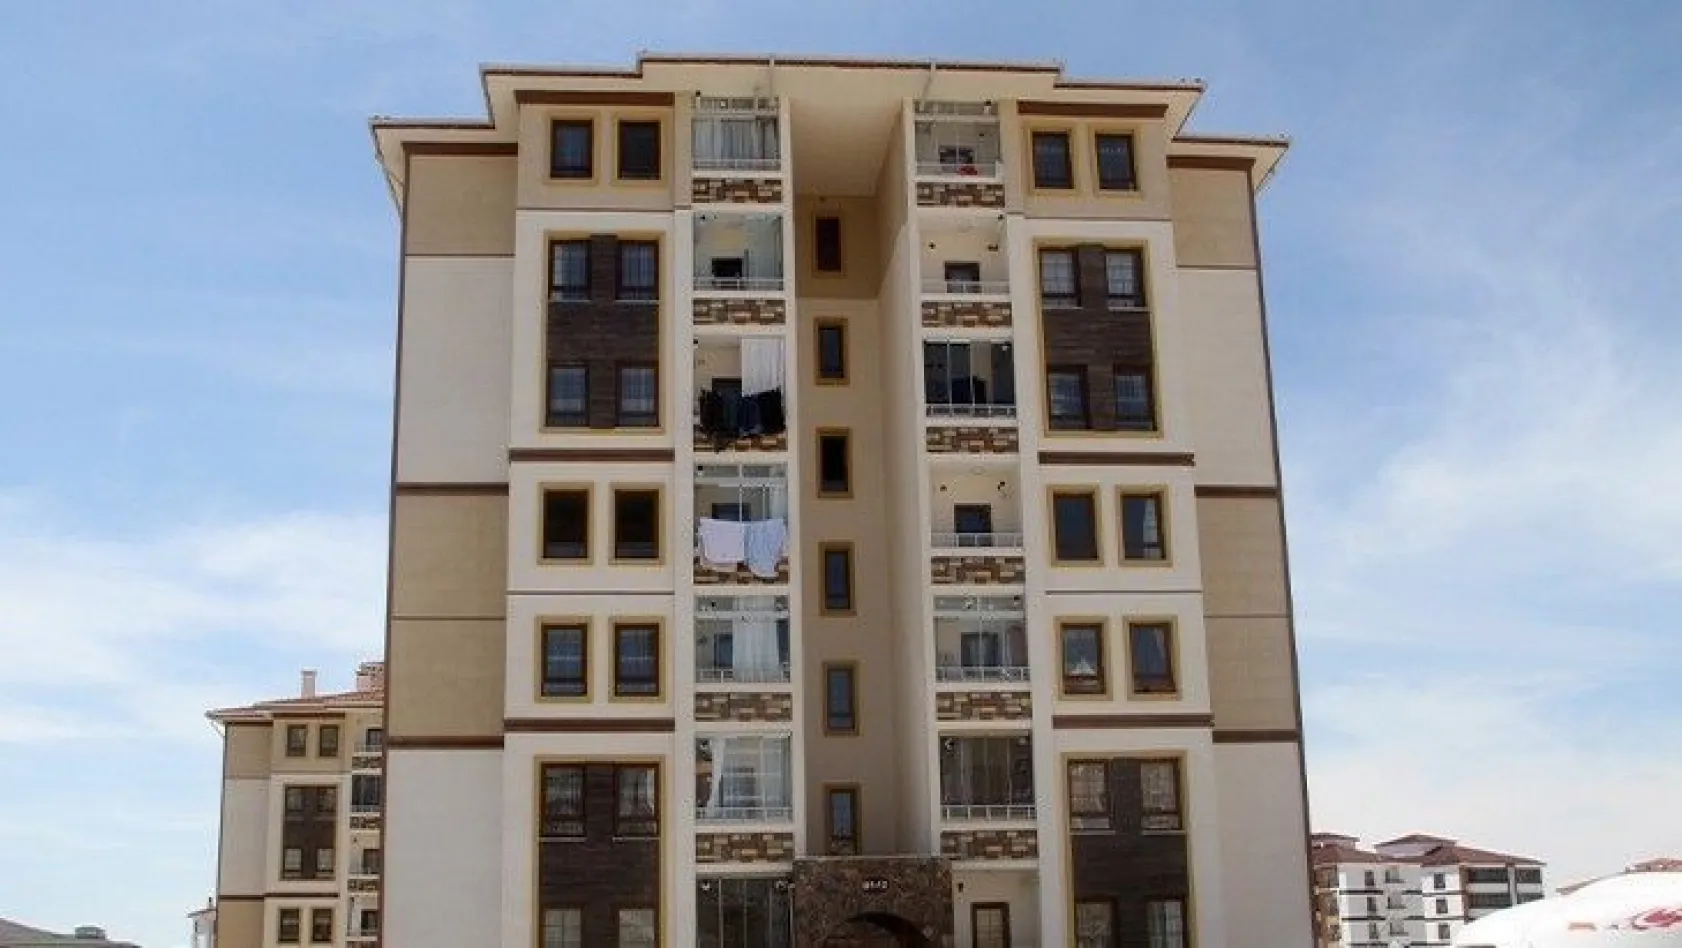 Elazığ'da 2 apartman daha karantinaya alındı